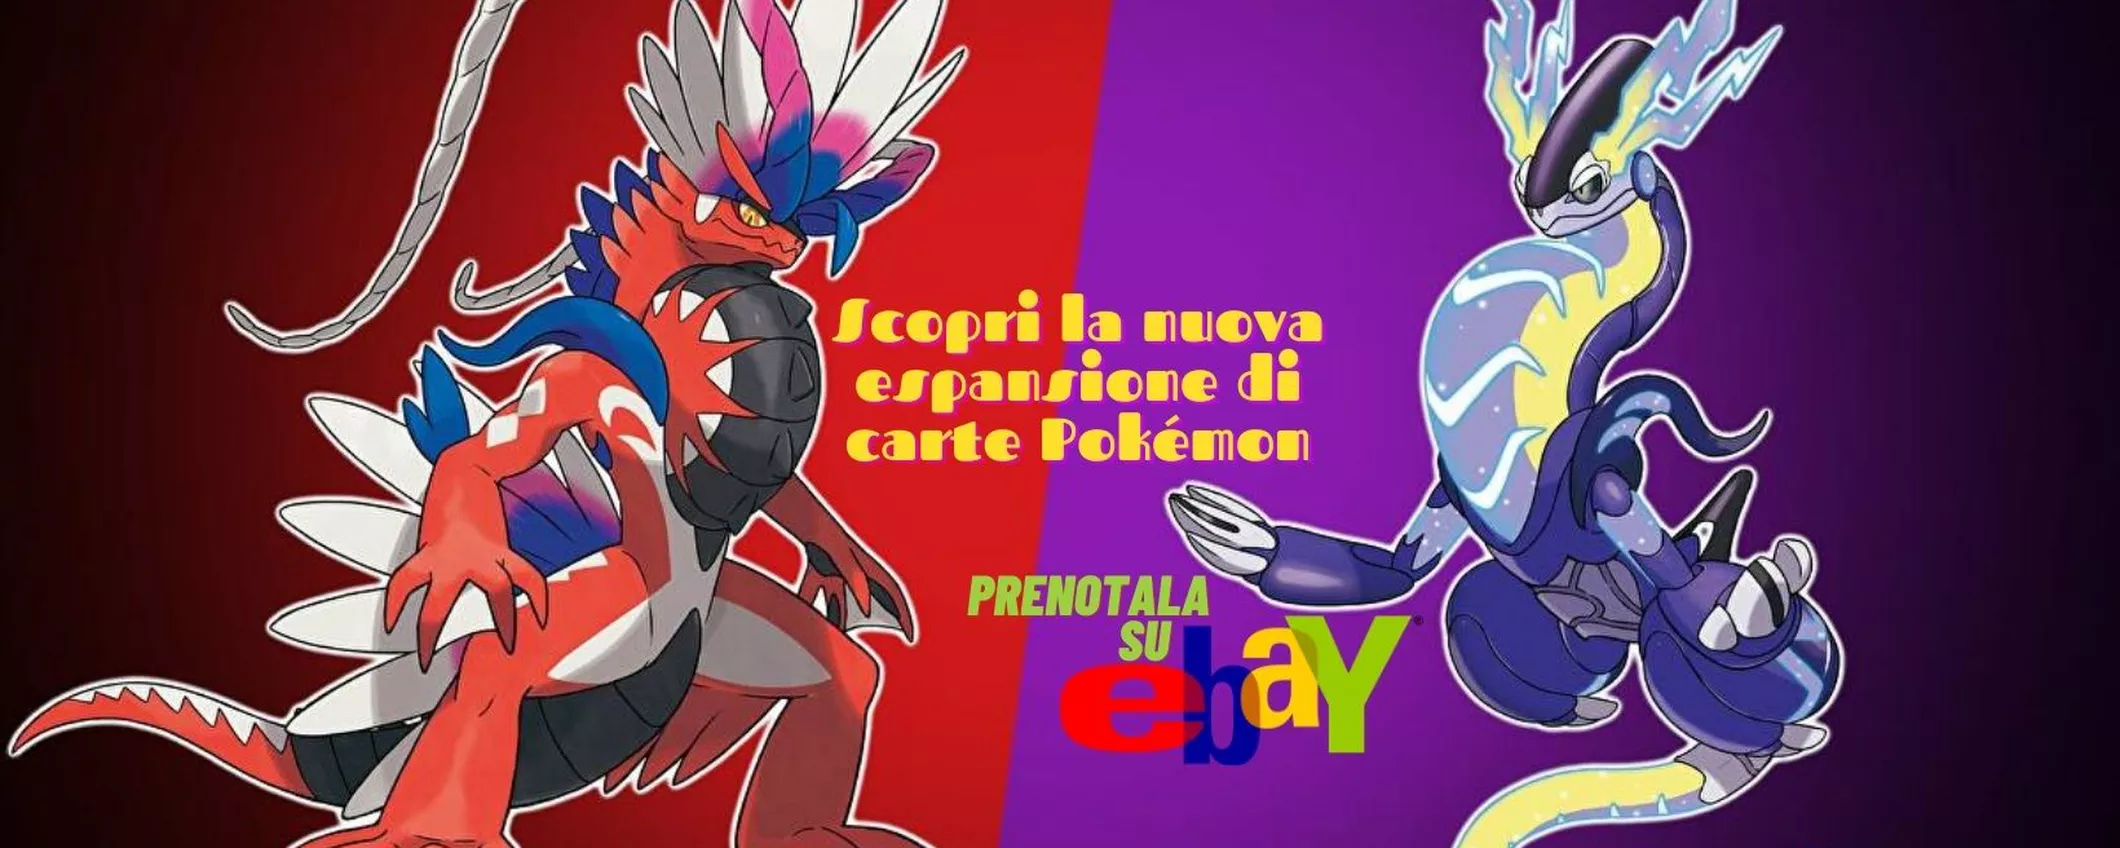 Pokémon Scarlatto e Pokémon Violetto: le nuove espansioni di carte in preordine su eBay